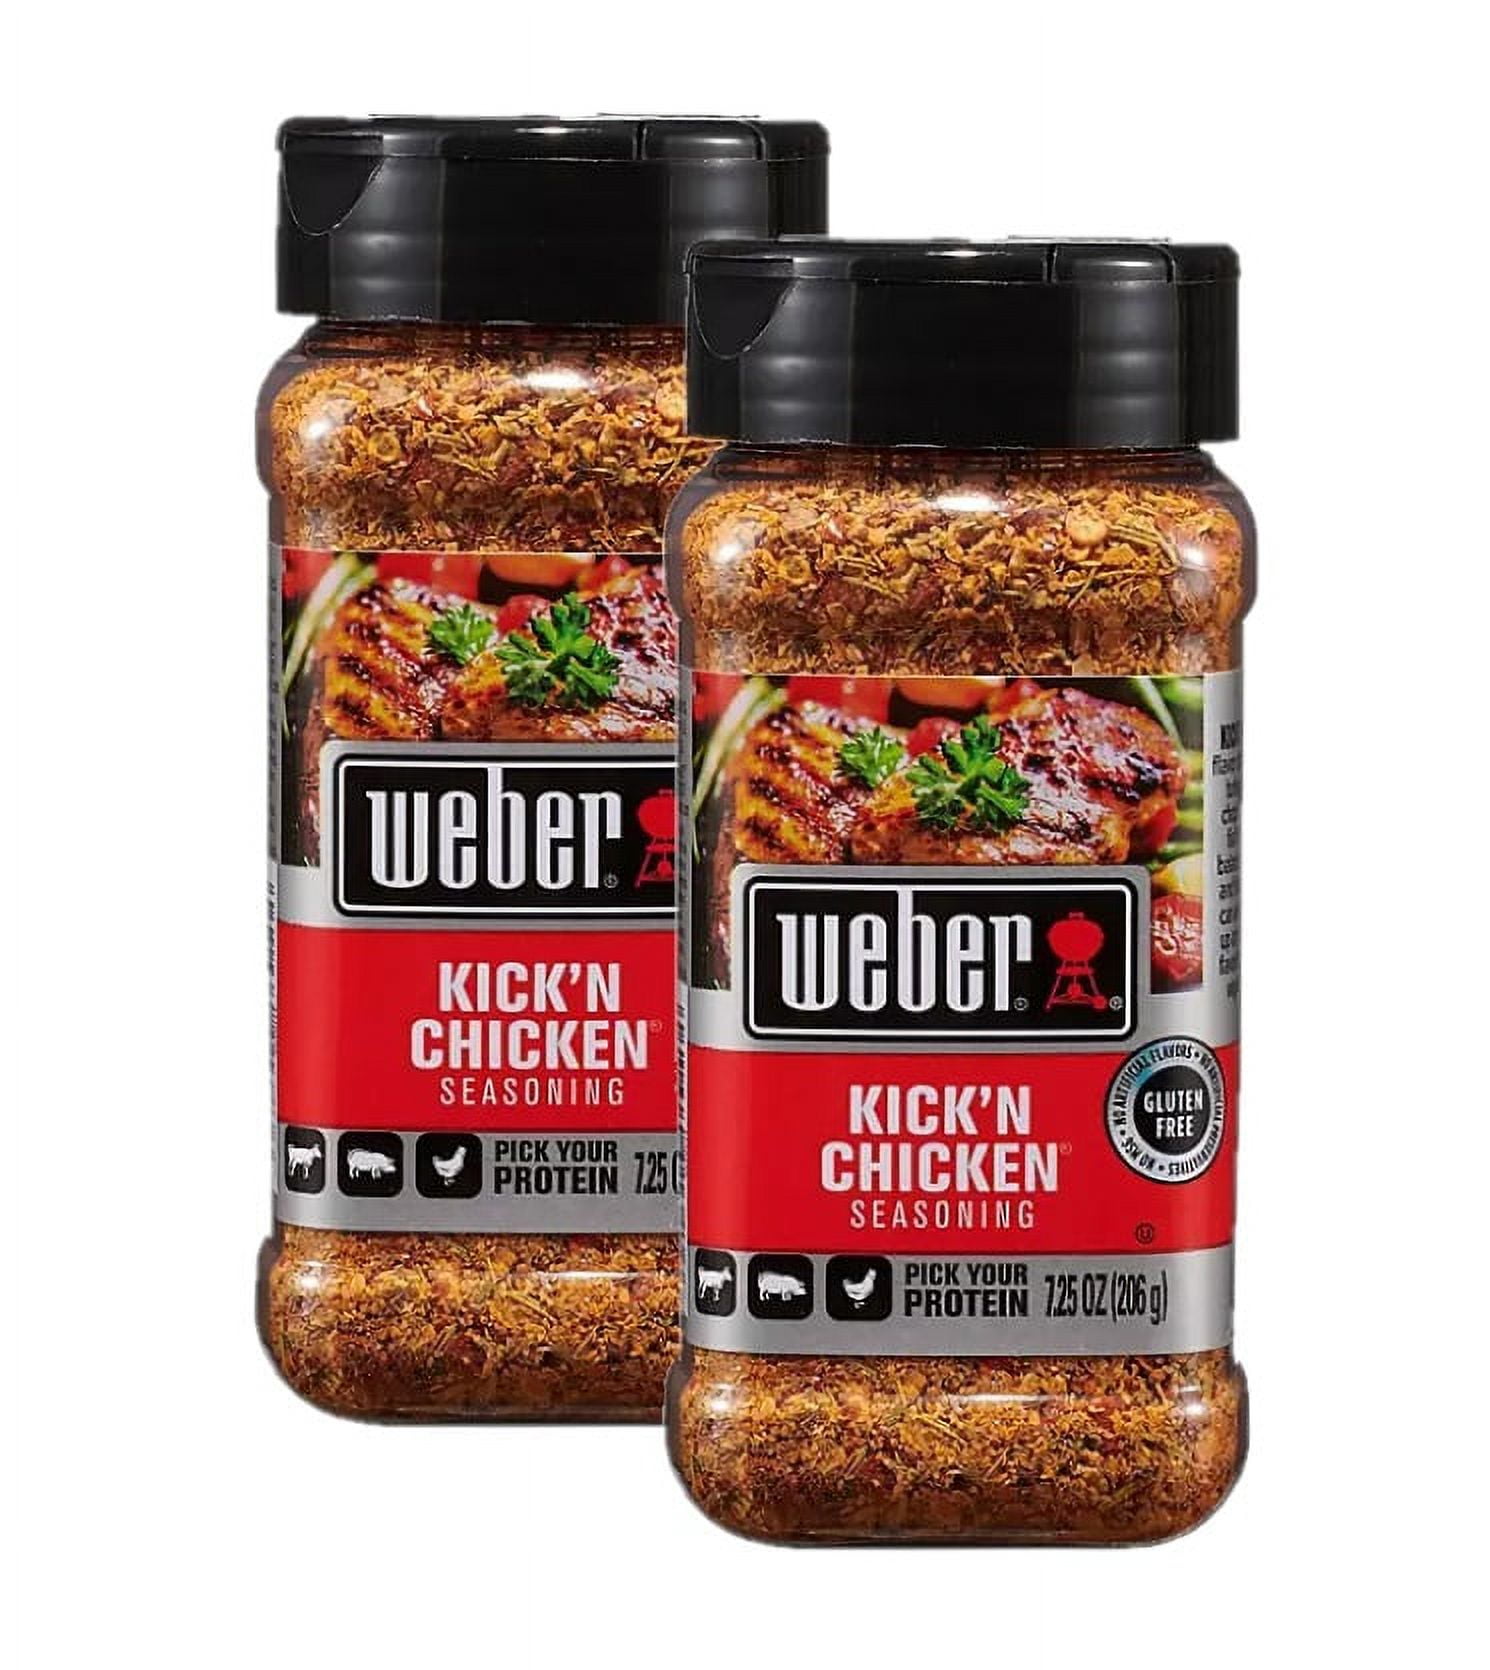 9 Weber Kick'n chicken ideas  recipes, chicken seasoning, food